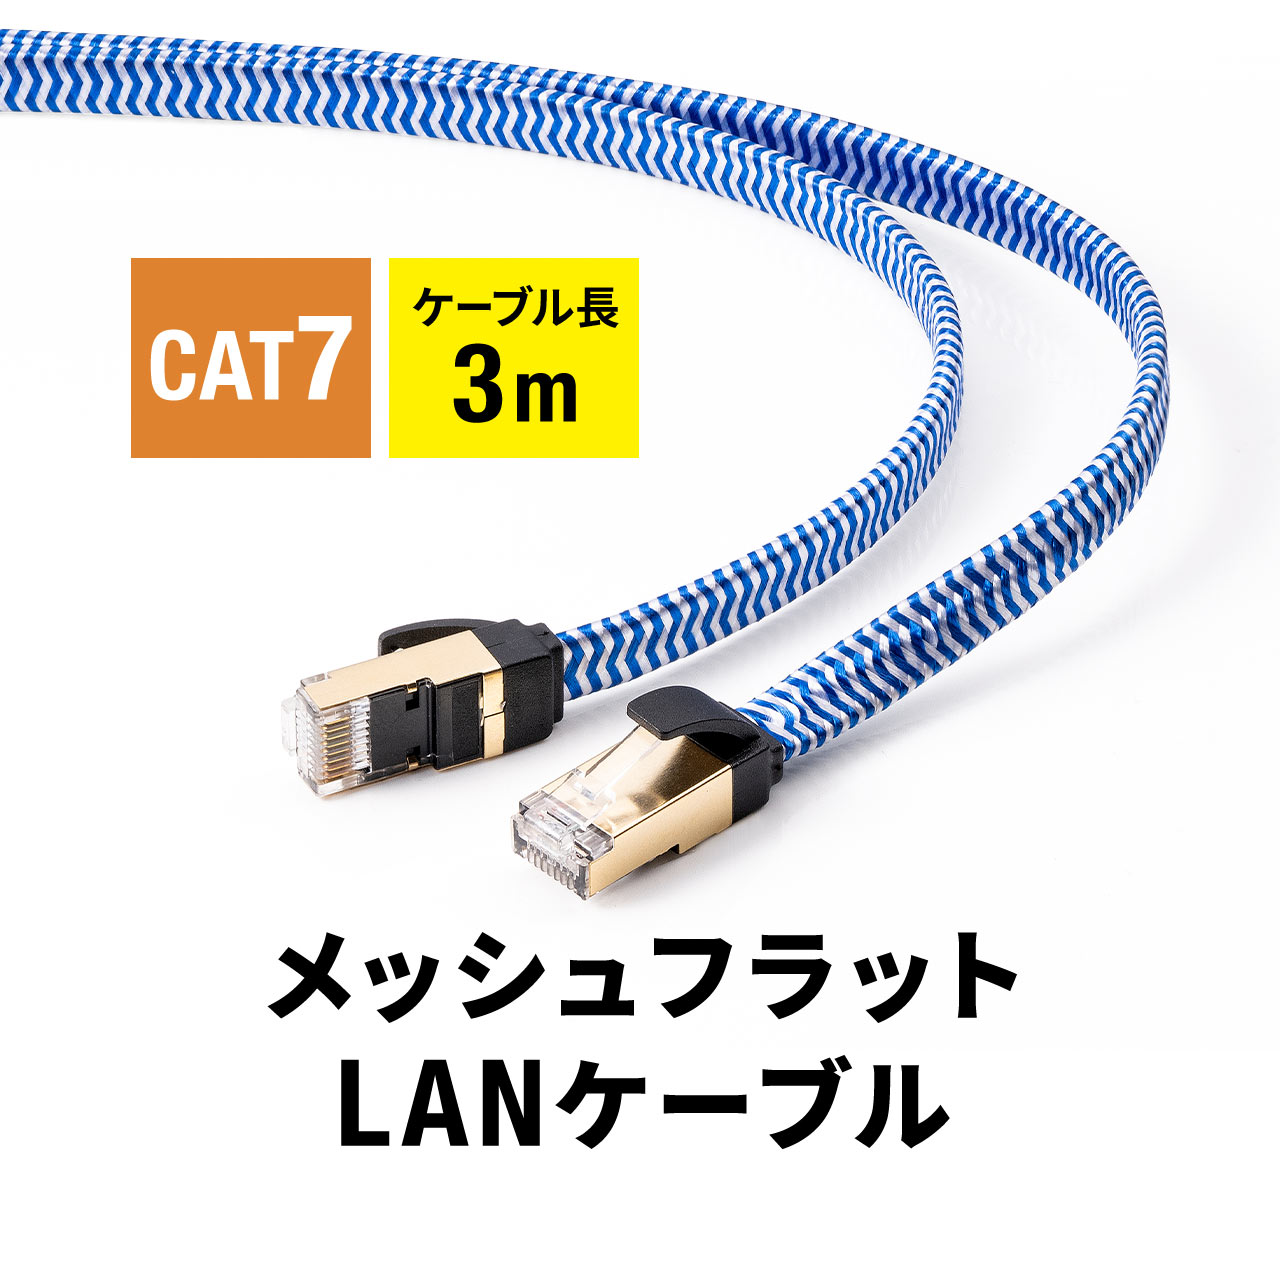 LANケーブル CAT7 カテゴリ7 カテ7 ランケーブル フラット メッシュ 丈夫 断線しにくい スリム 高速 伝送速度10Gbps ツメ折れ防止カバー より線 3m